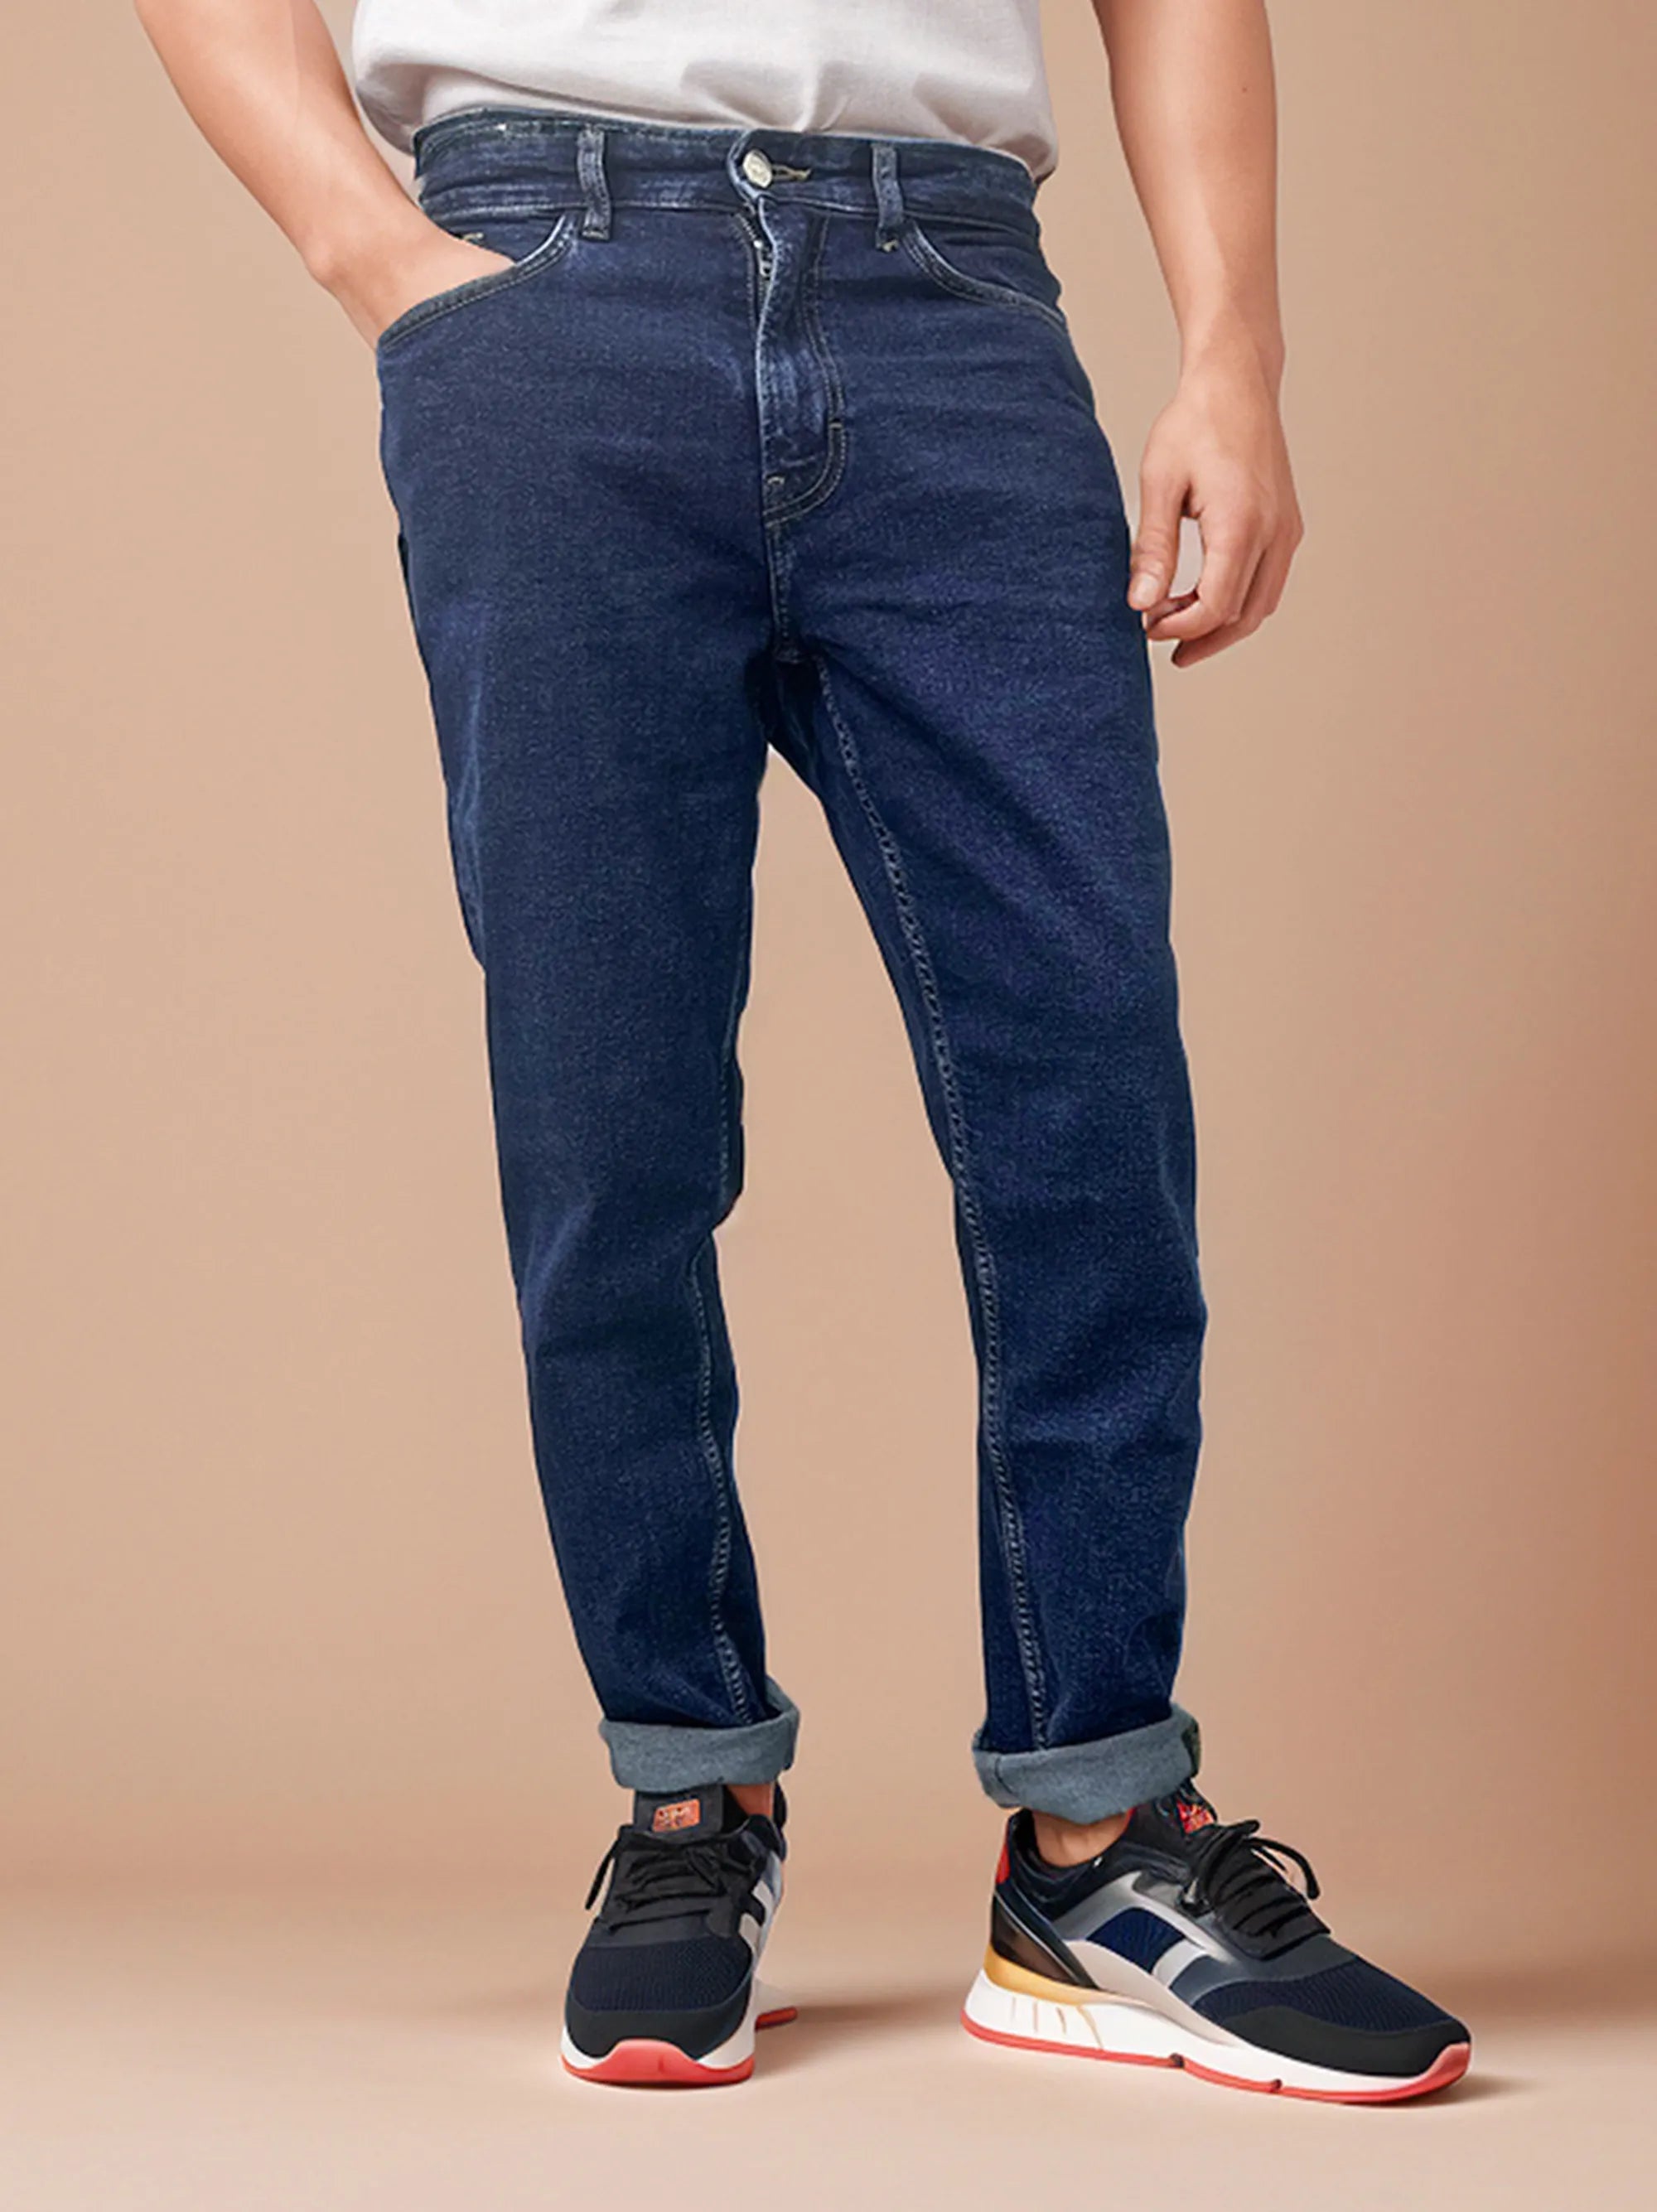 Men’s Slim fit Stretchable Light Blue Jeans Pant